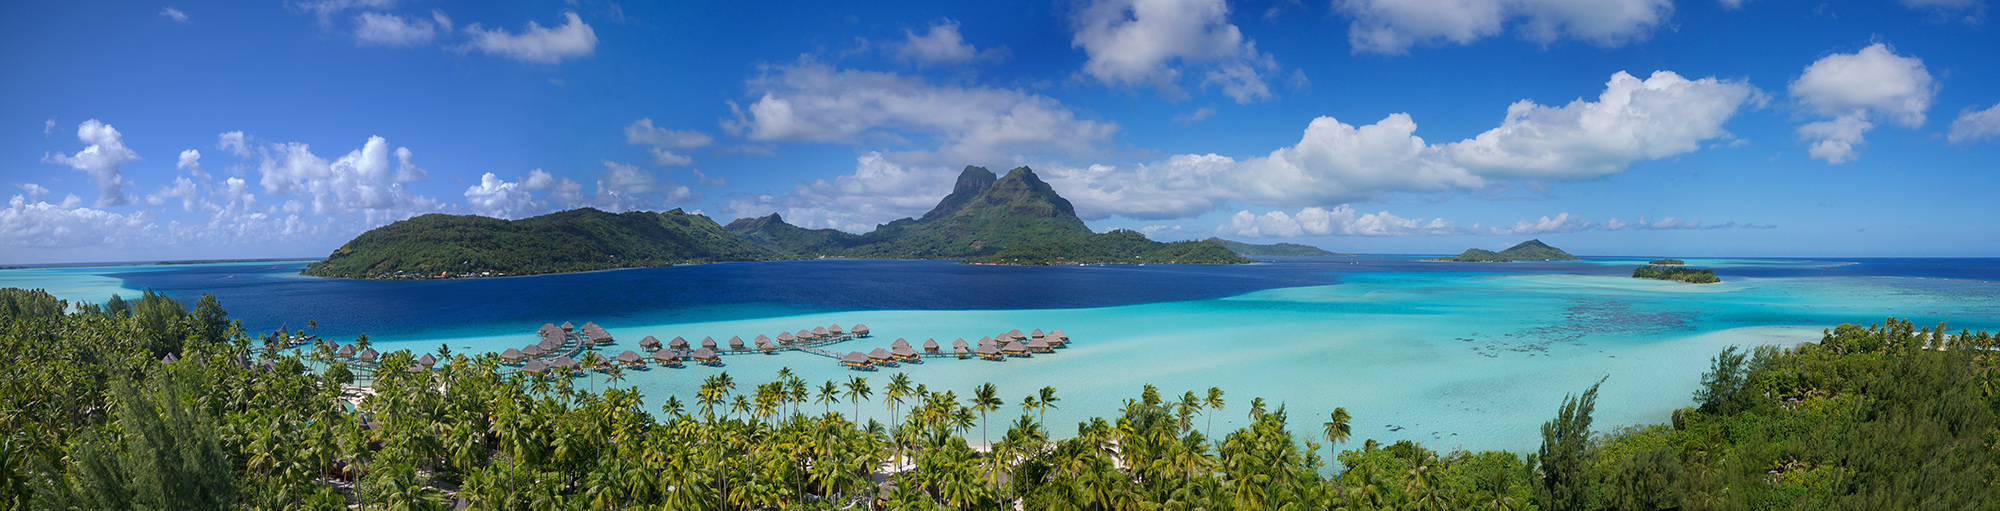 séjours-luxe-polynesie-e-tahiti-travel